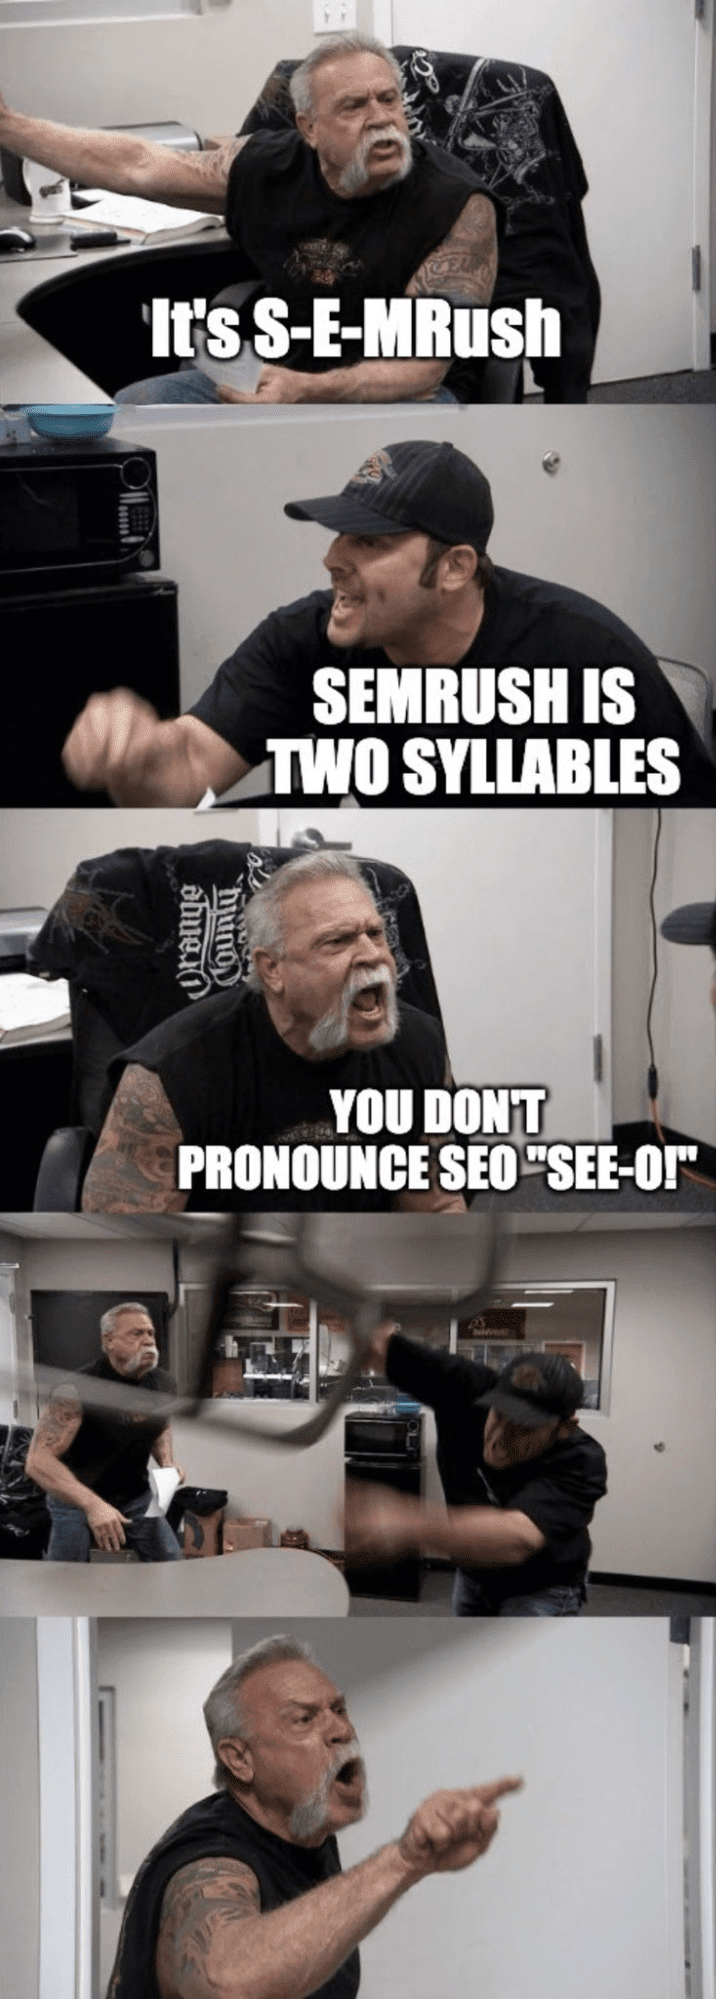 "SEMrush" vs "S E M rush" SEO meme